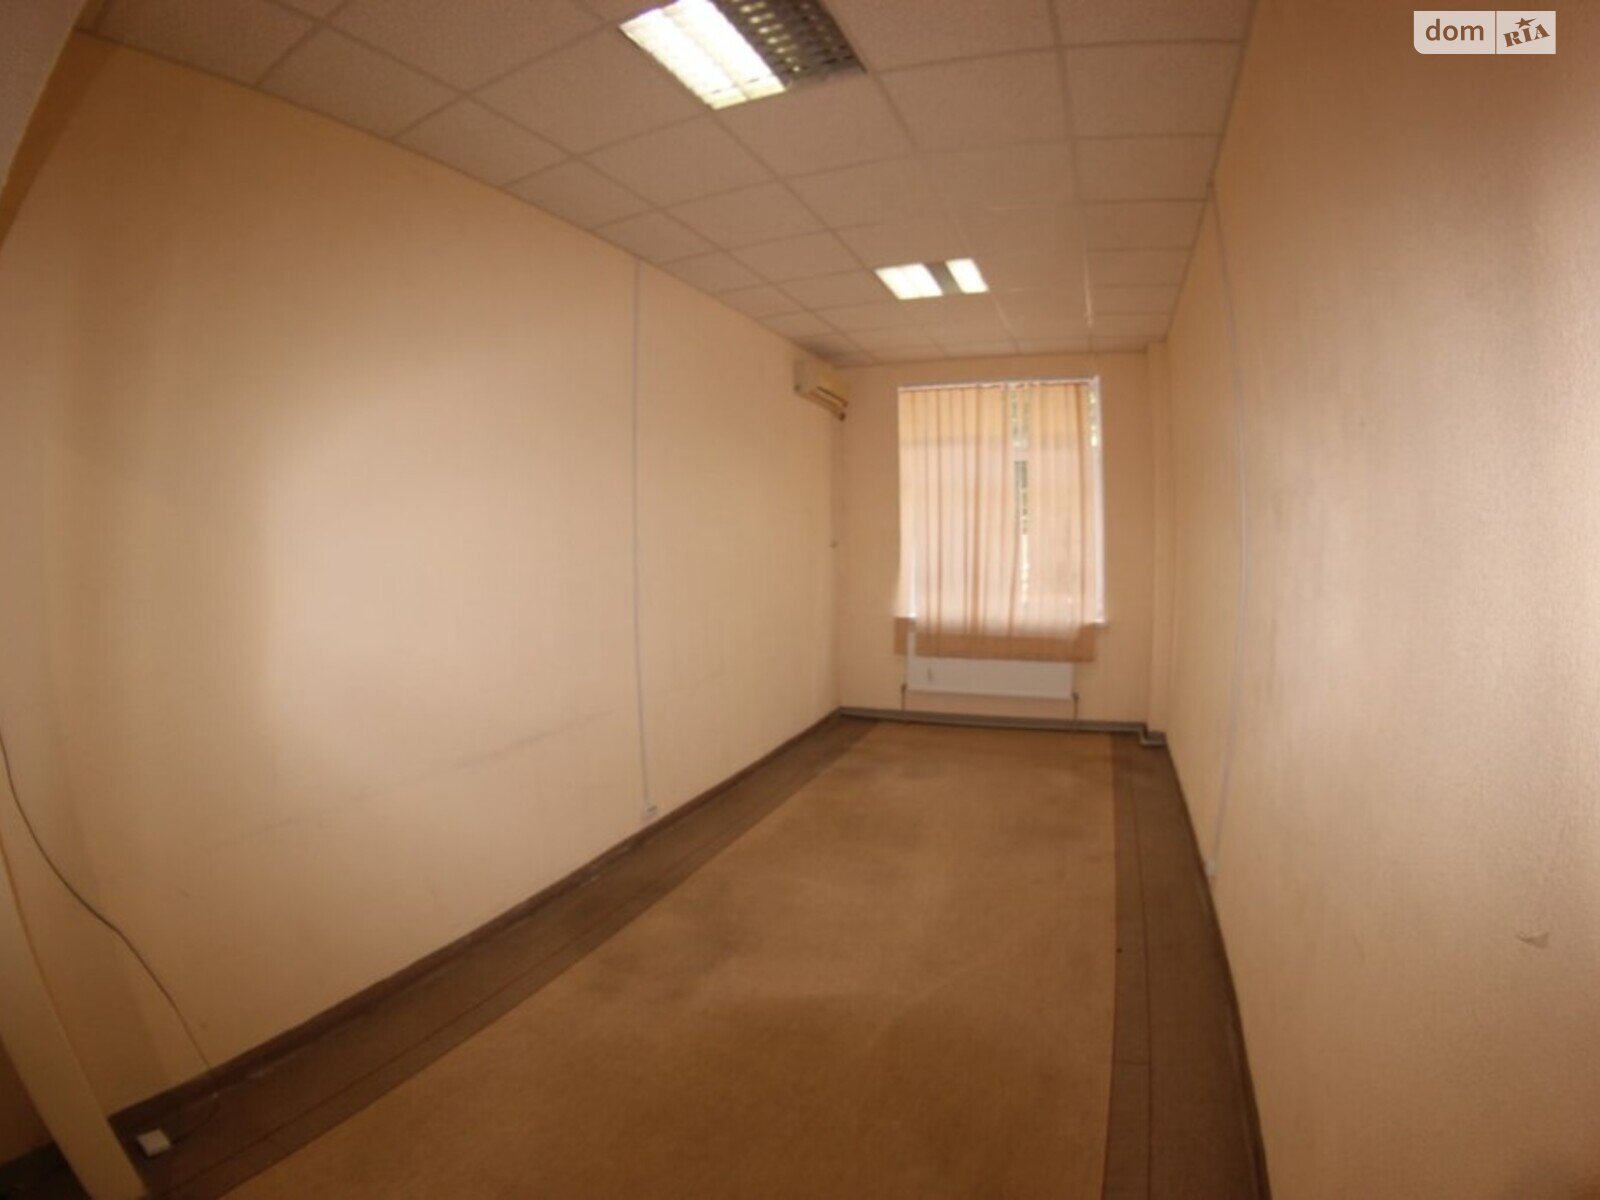 Аренда офисного помещения в Днепре, Ольги княгини улица, помещений - 2, этаж - 1 фото 1